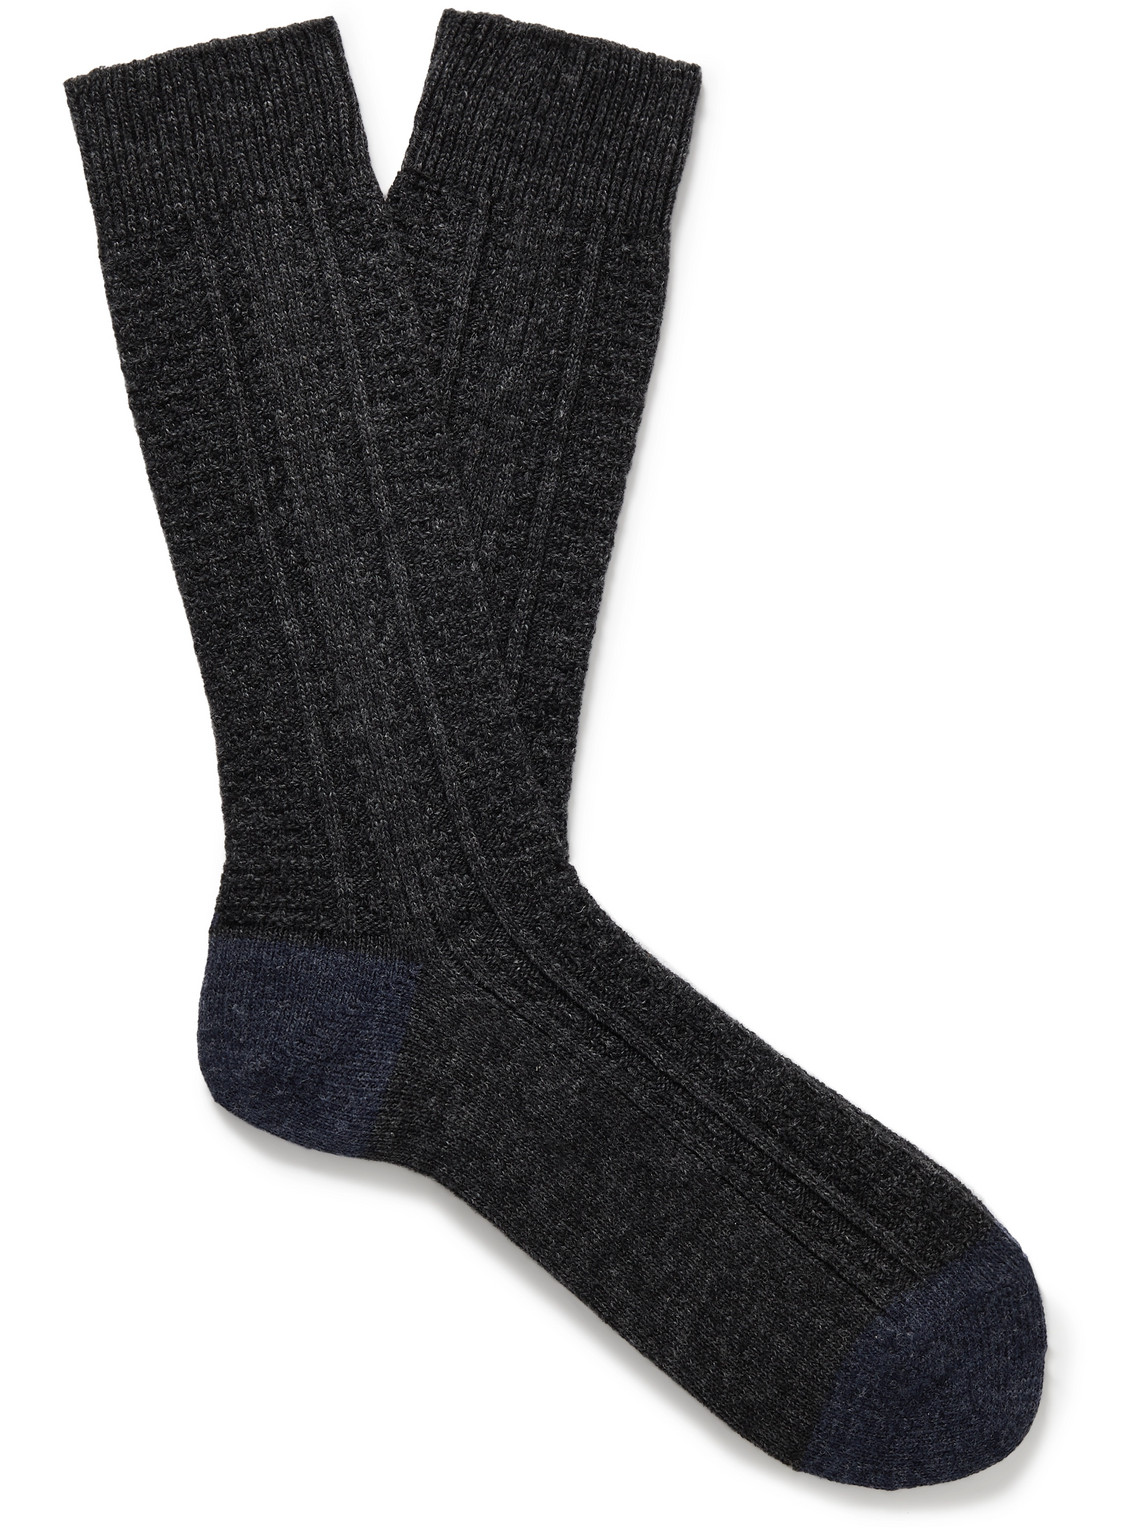 Two-Tone Wool-Blend Socks